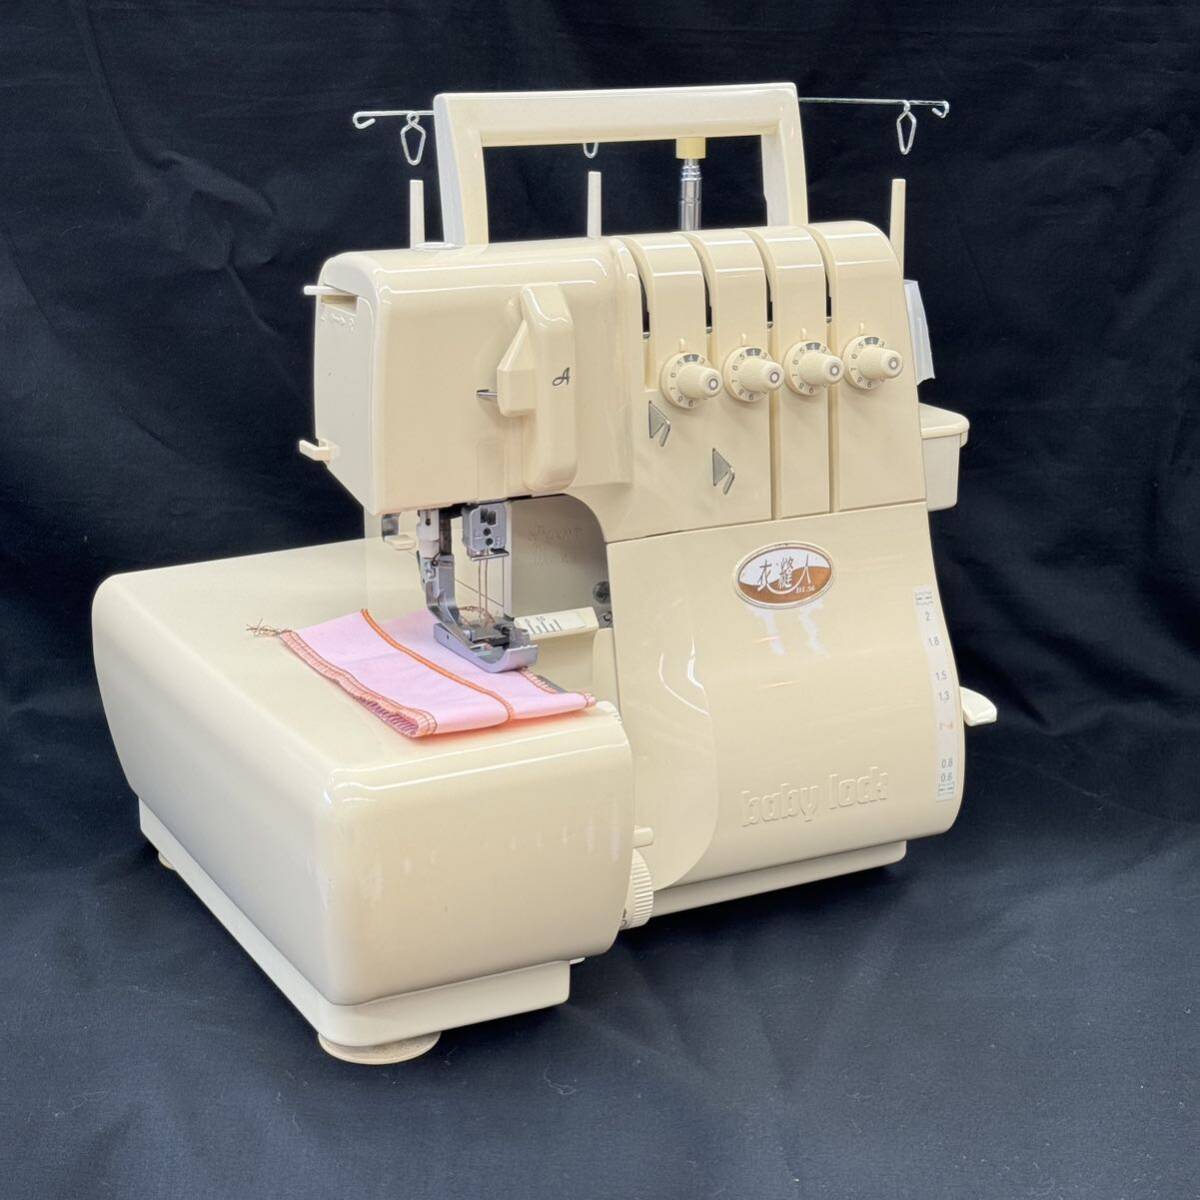 USED 中古 状態良 整備調整済 日本製 ベビーロック 衣縫人 BL56 2本針4本糸ロック フットコント付き エアスルーシステムの画像6